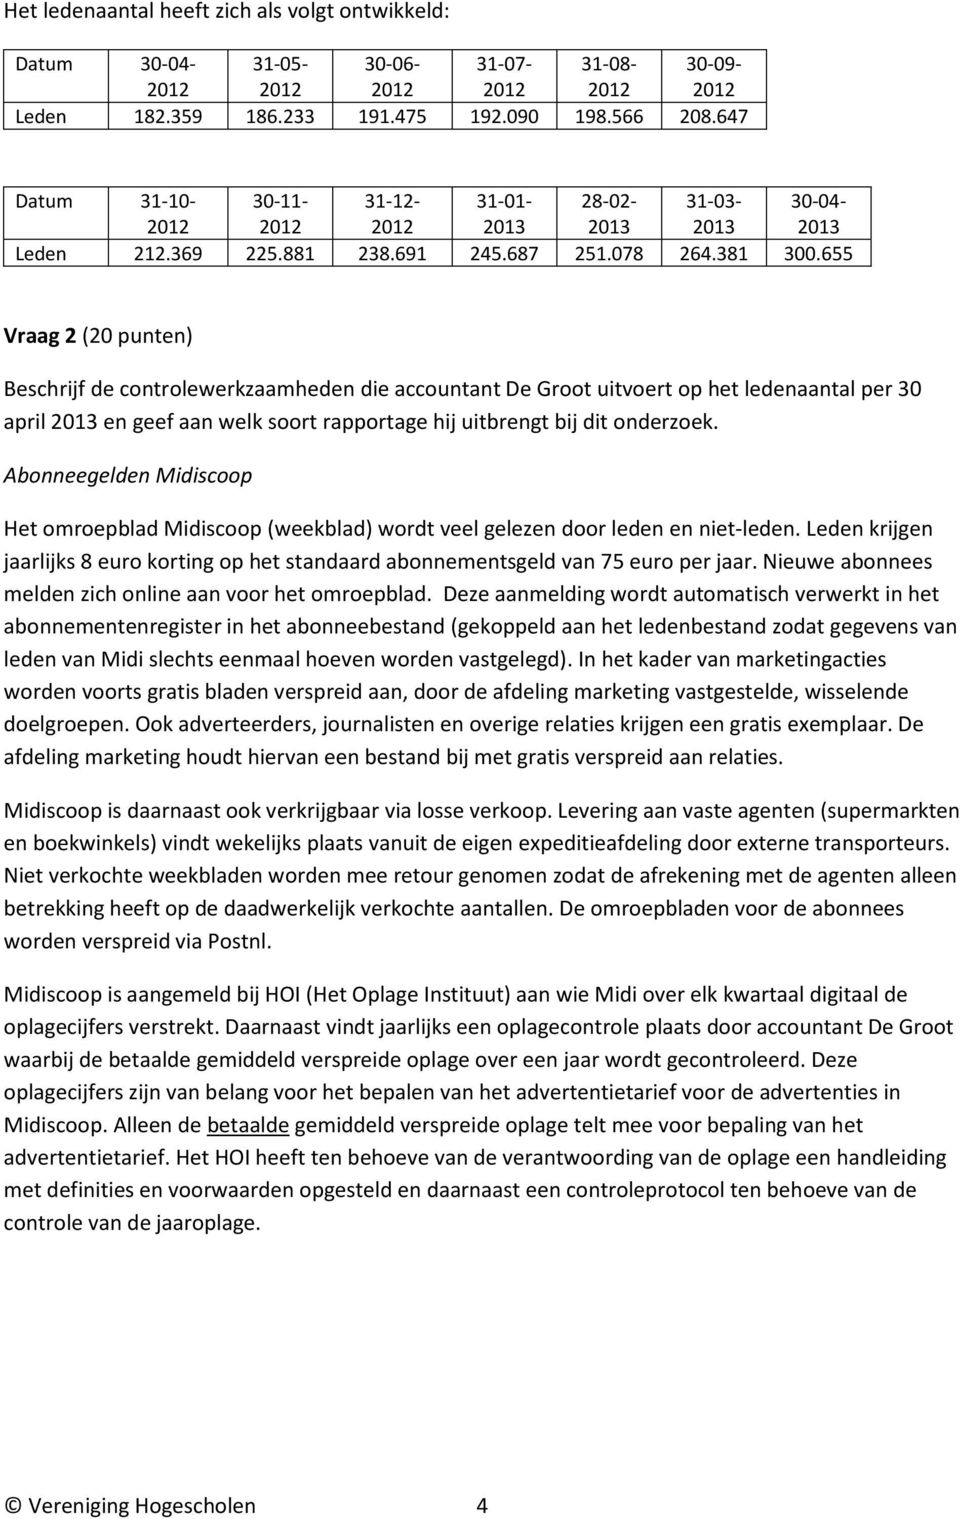 655 Vraag 2 (20 punten) Beschrijf de controlewerkzaamheden die accountant De Groot uitvoert op het ledenaantal per 30 april 2013 en geef aan welk soort rapportage hij uitbrengt bij dit onderzoek.